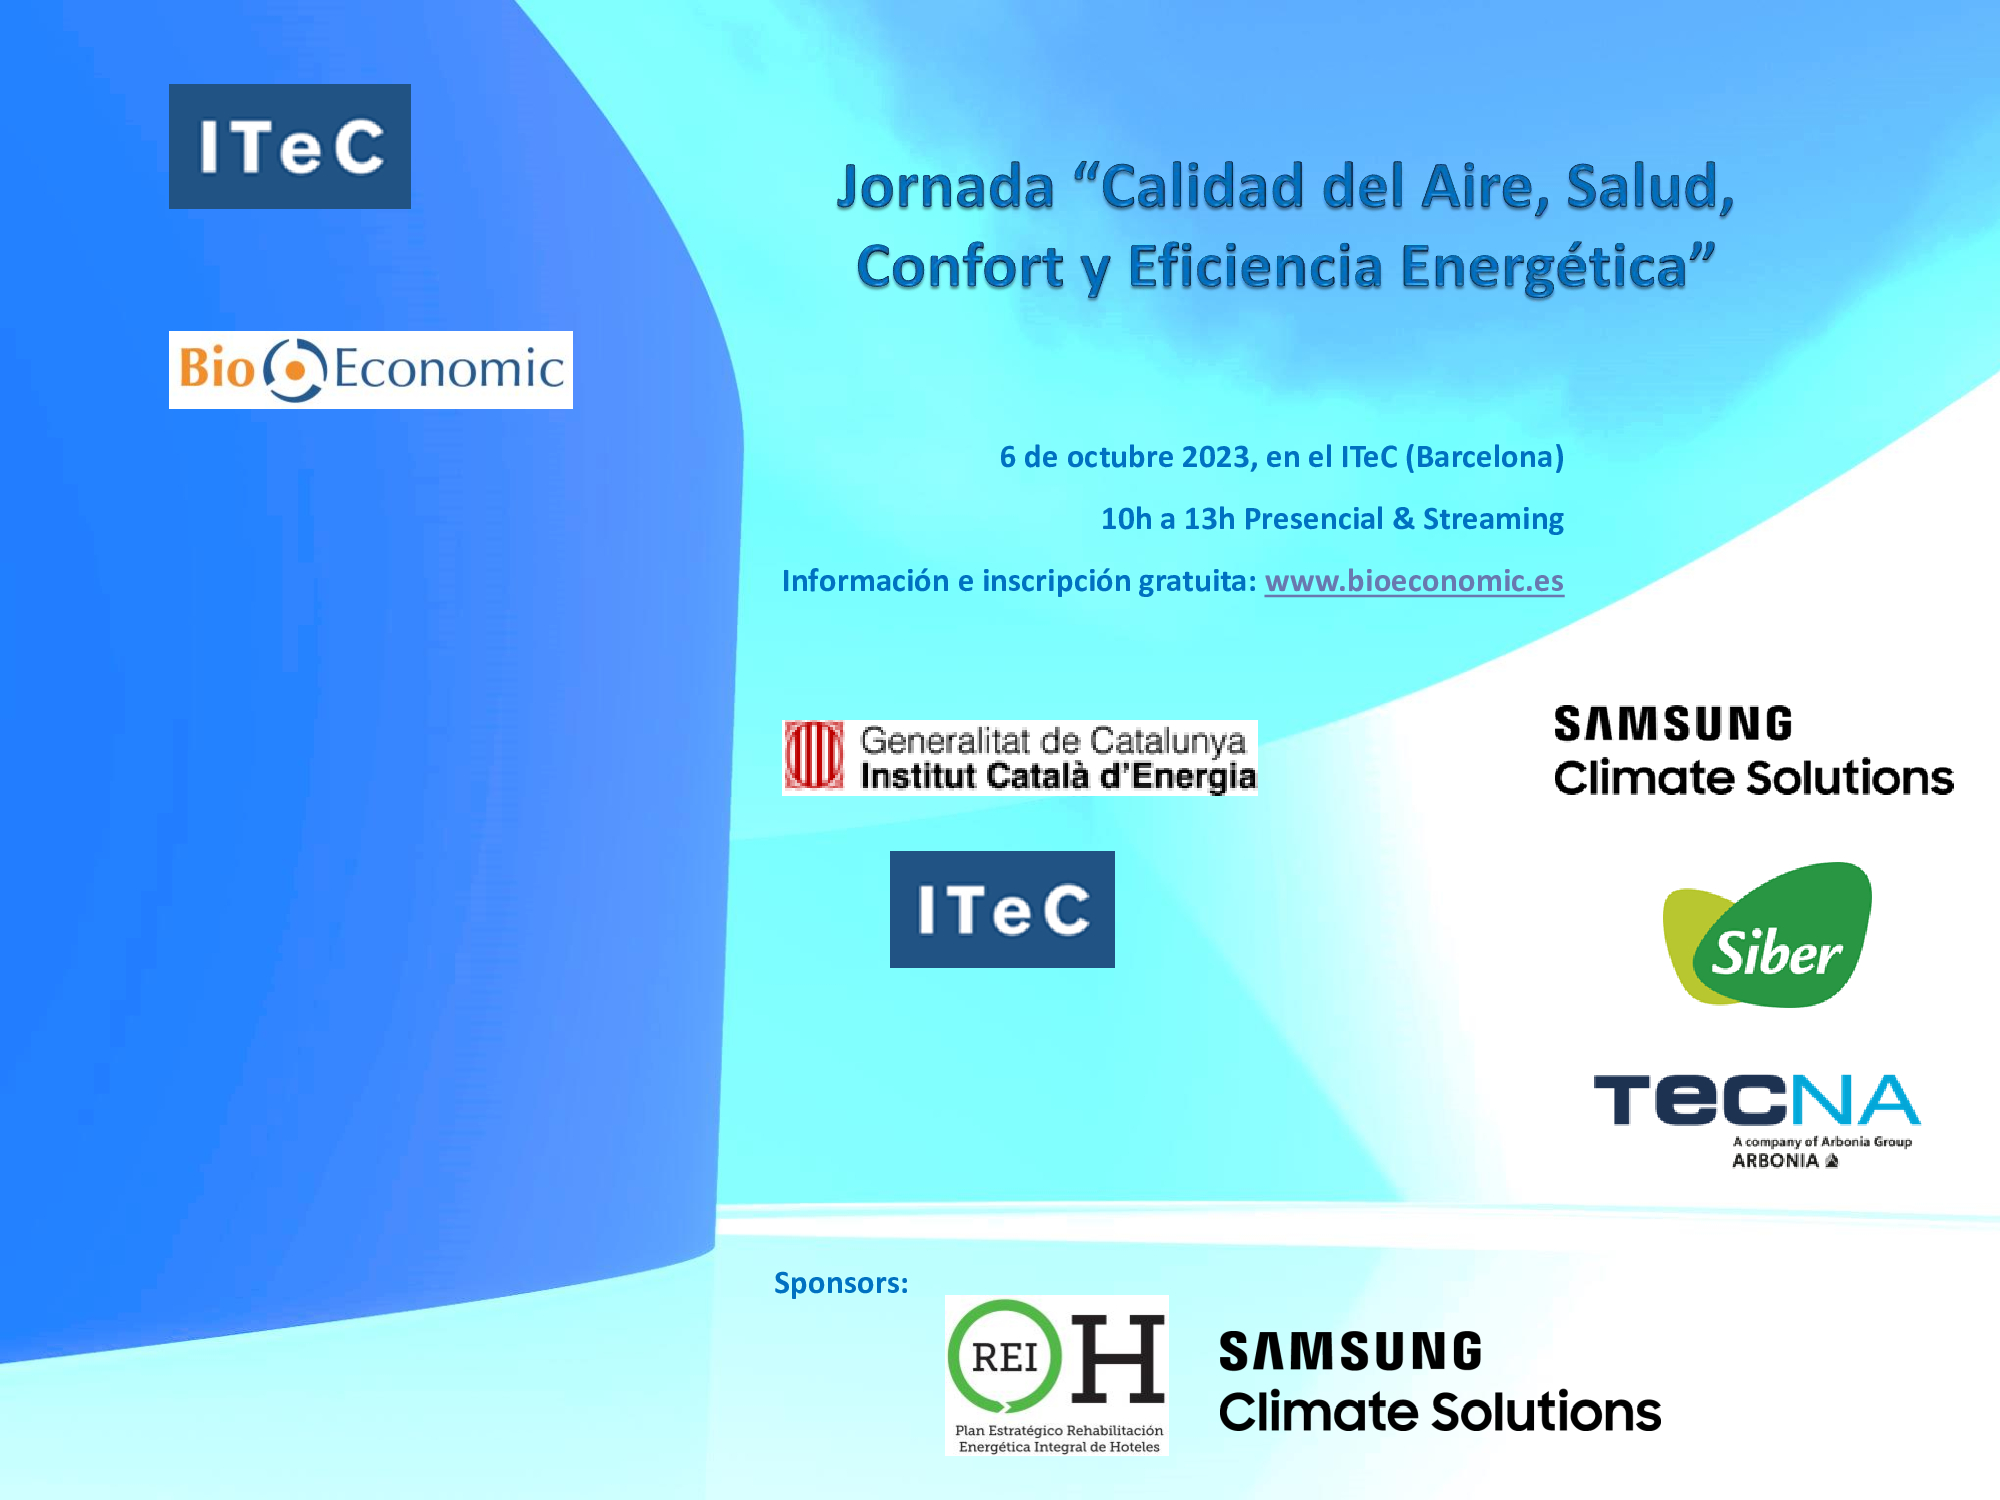 Jornada ITeC “Calidad del Aire, Salud, Confort y Eficiencia Energética”